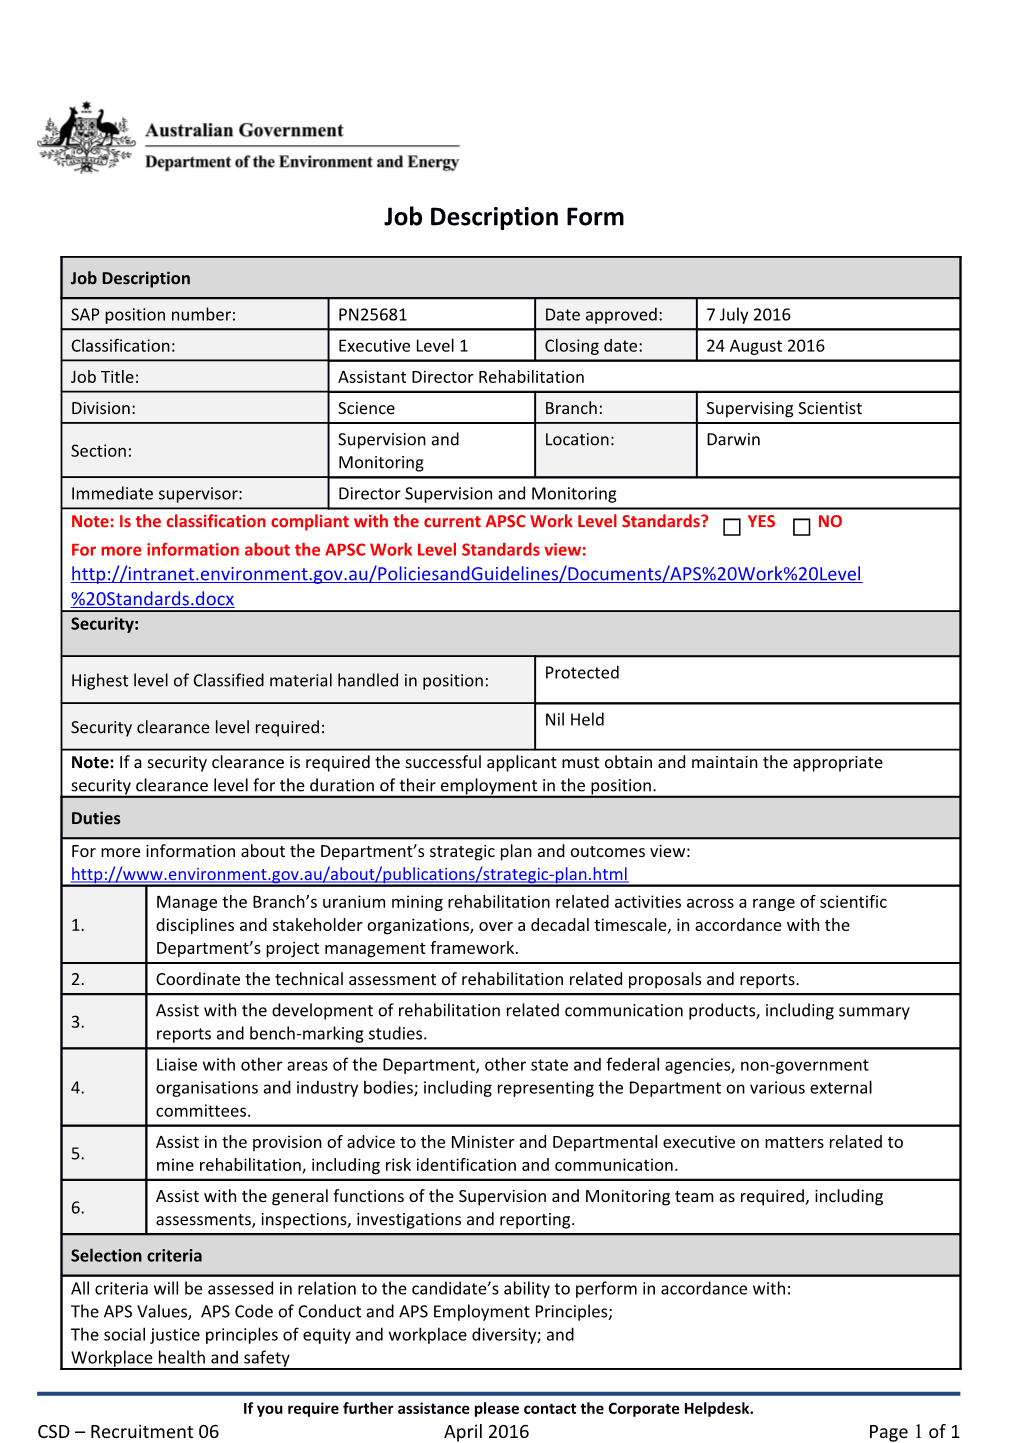 Job Description Form - April 2016